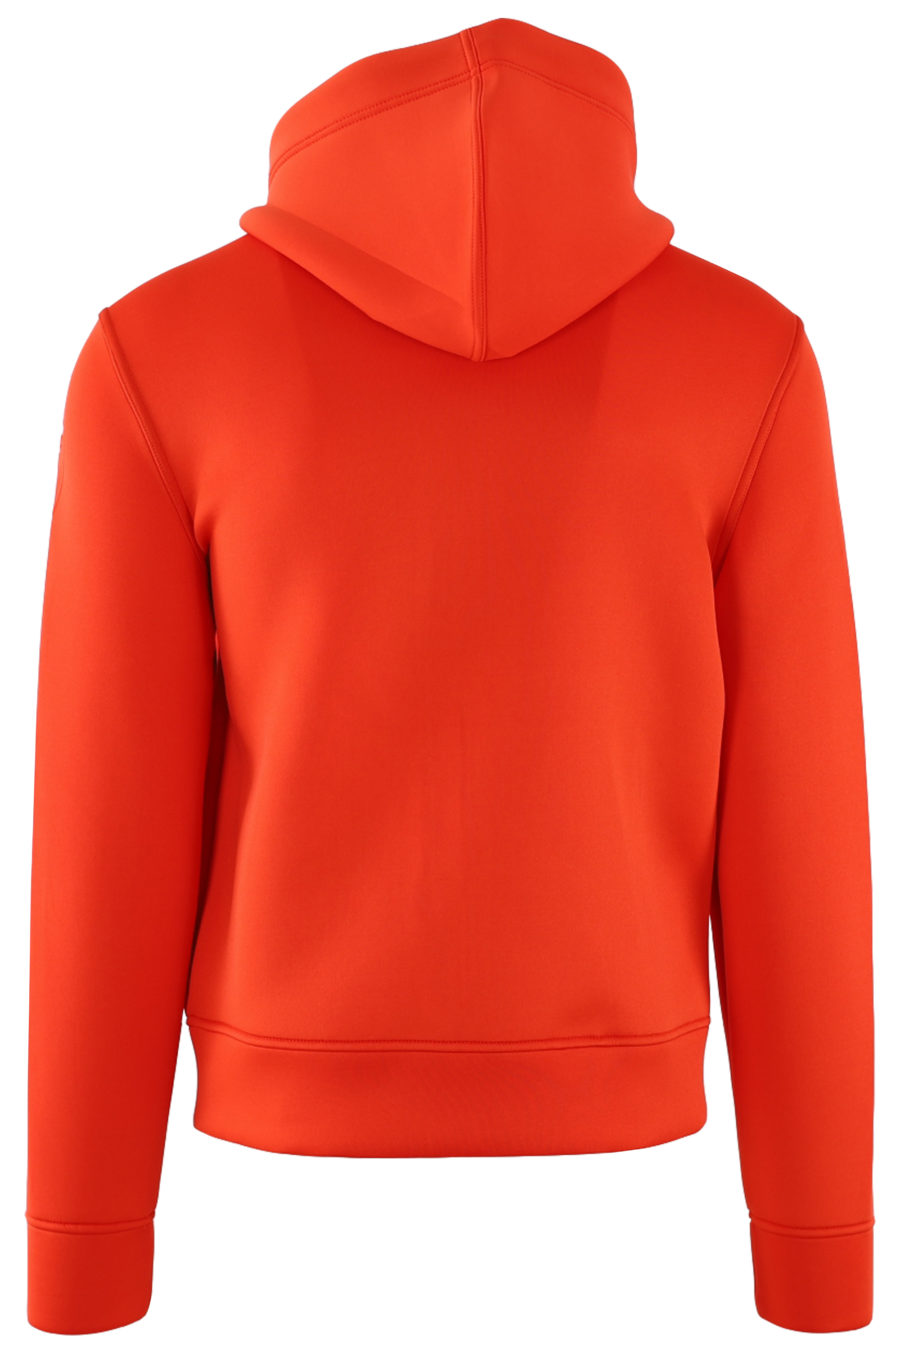 Camisola de neoprene laranja com capuz e fecho de correr - IMG 0511